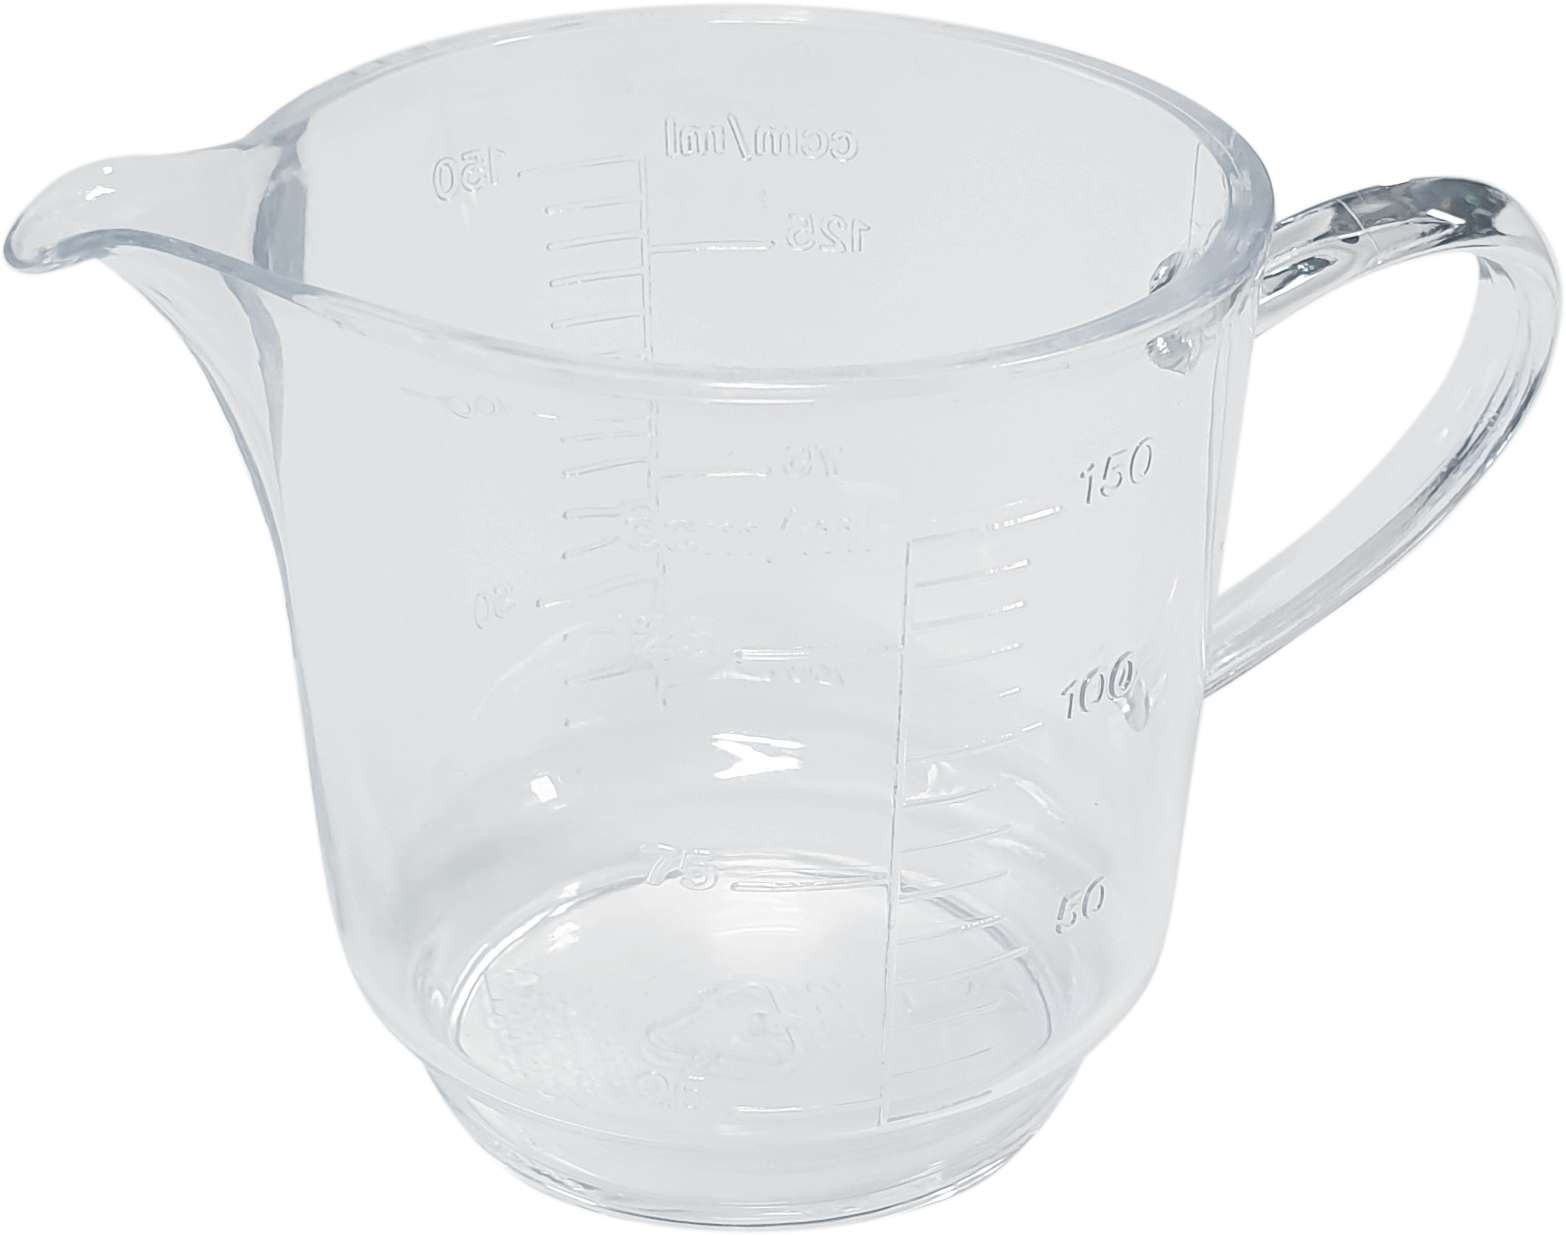 TVAR.cz - Produkt Measuring cup 150 ml PP